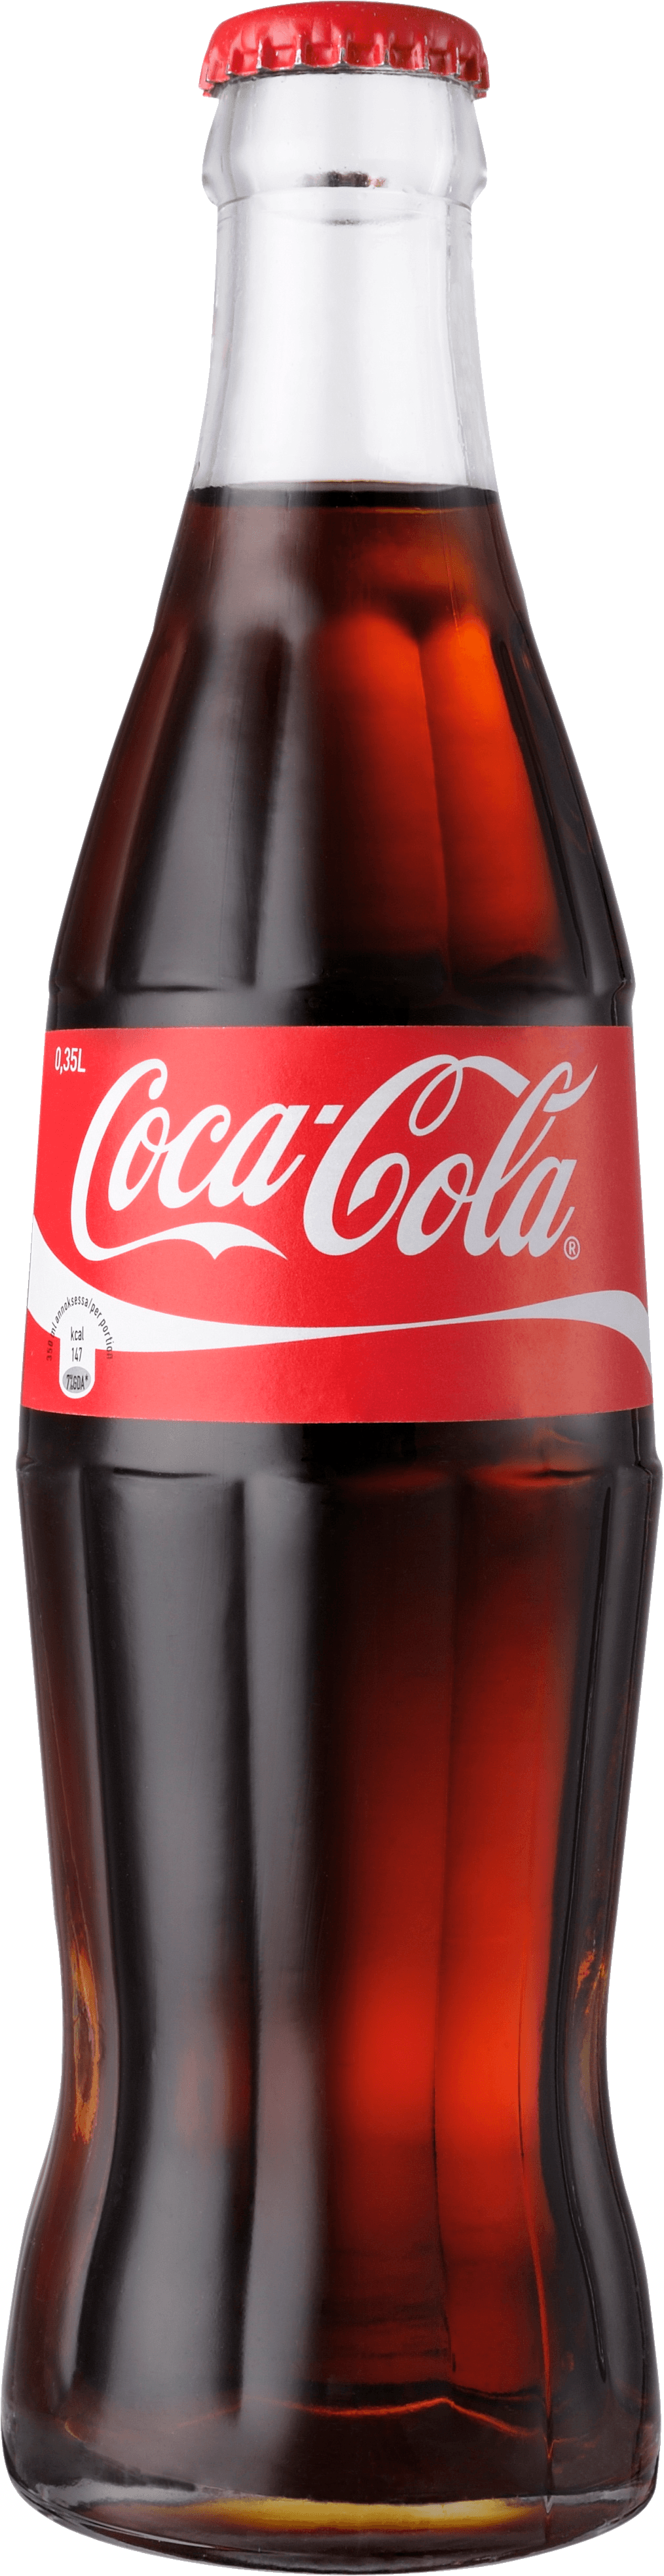 download coca cola bottle png image png image pngimg #10978